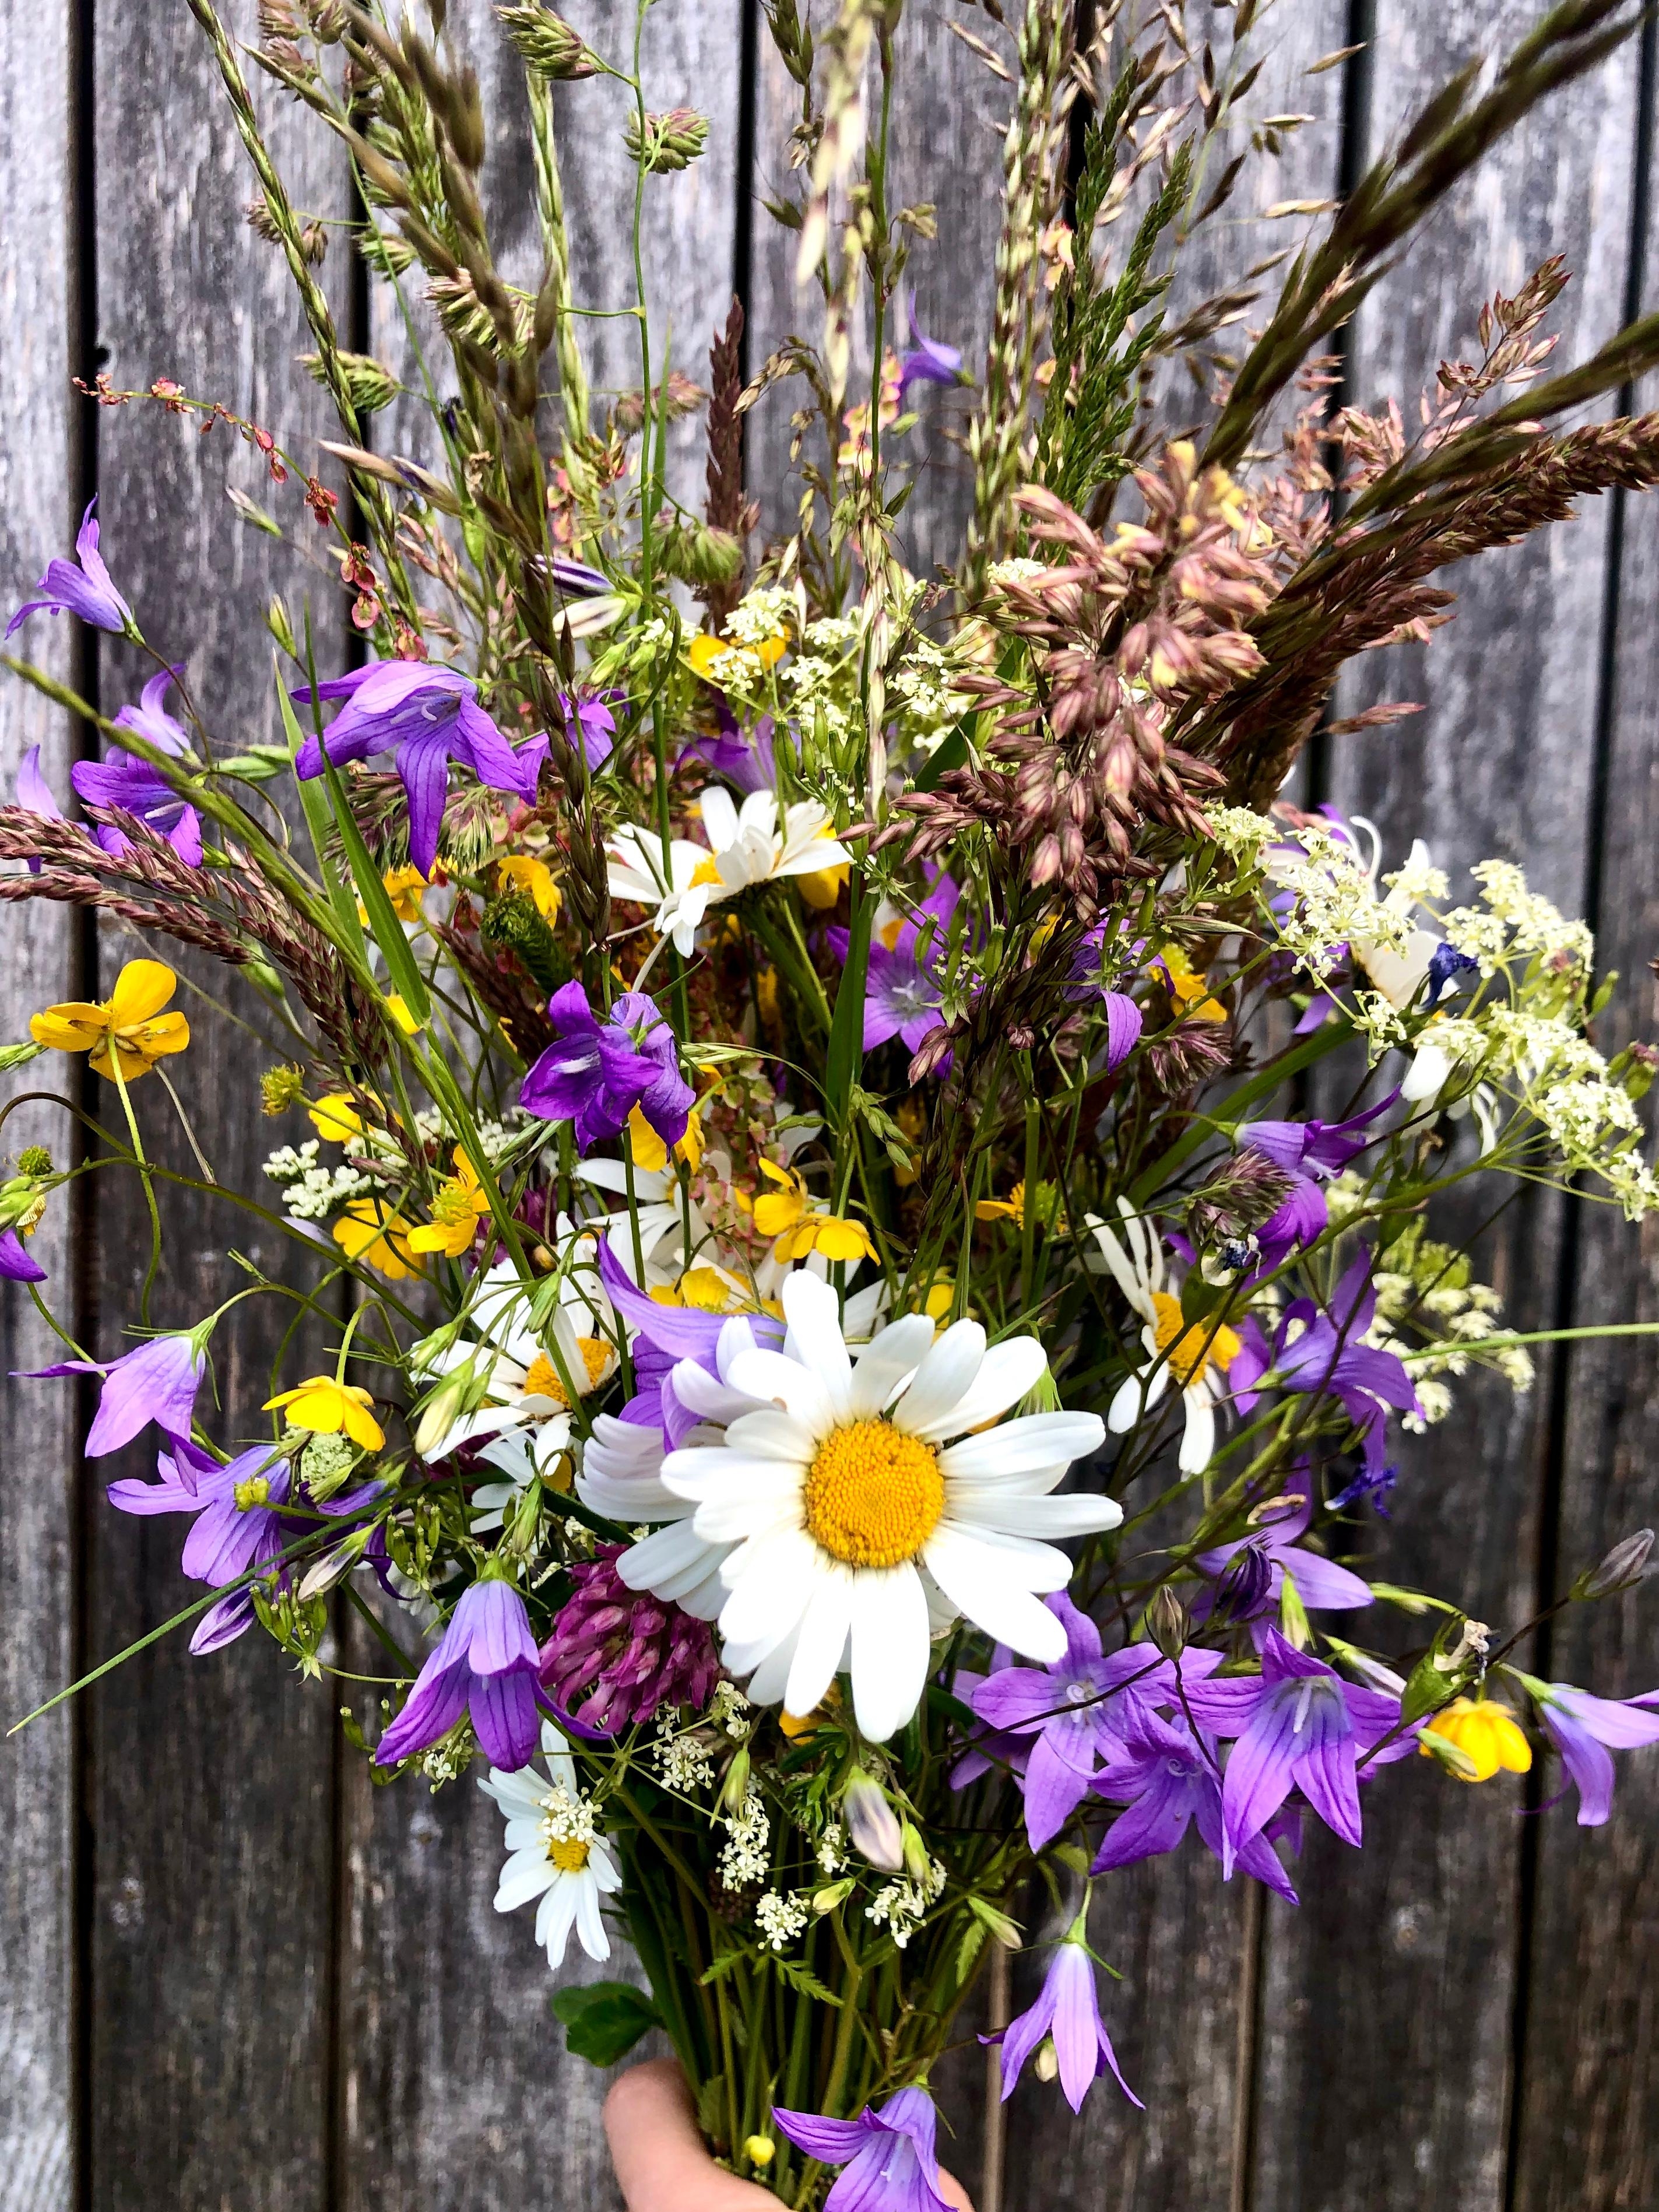 #freshflowerfriday
Startet gut ins Wochenende & ganz herzliche Grüße!